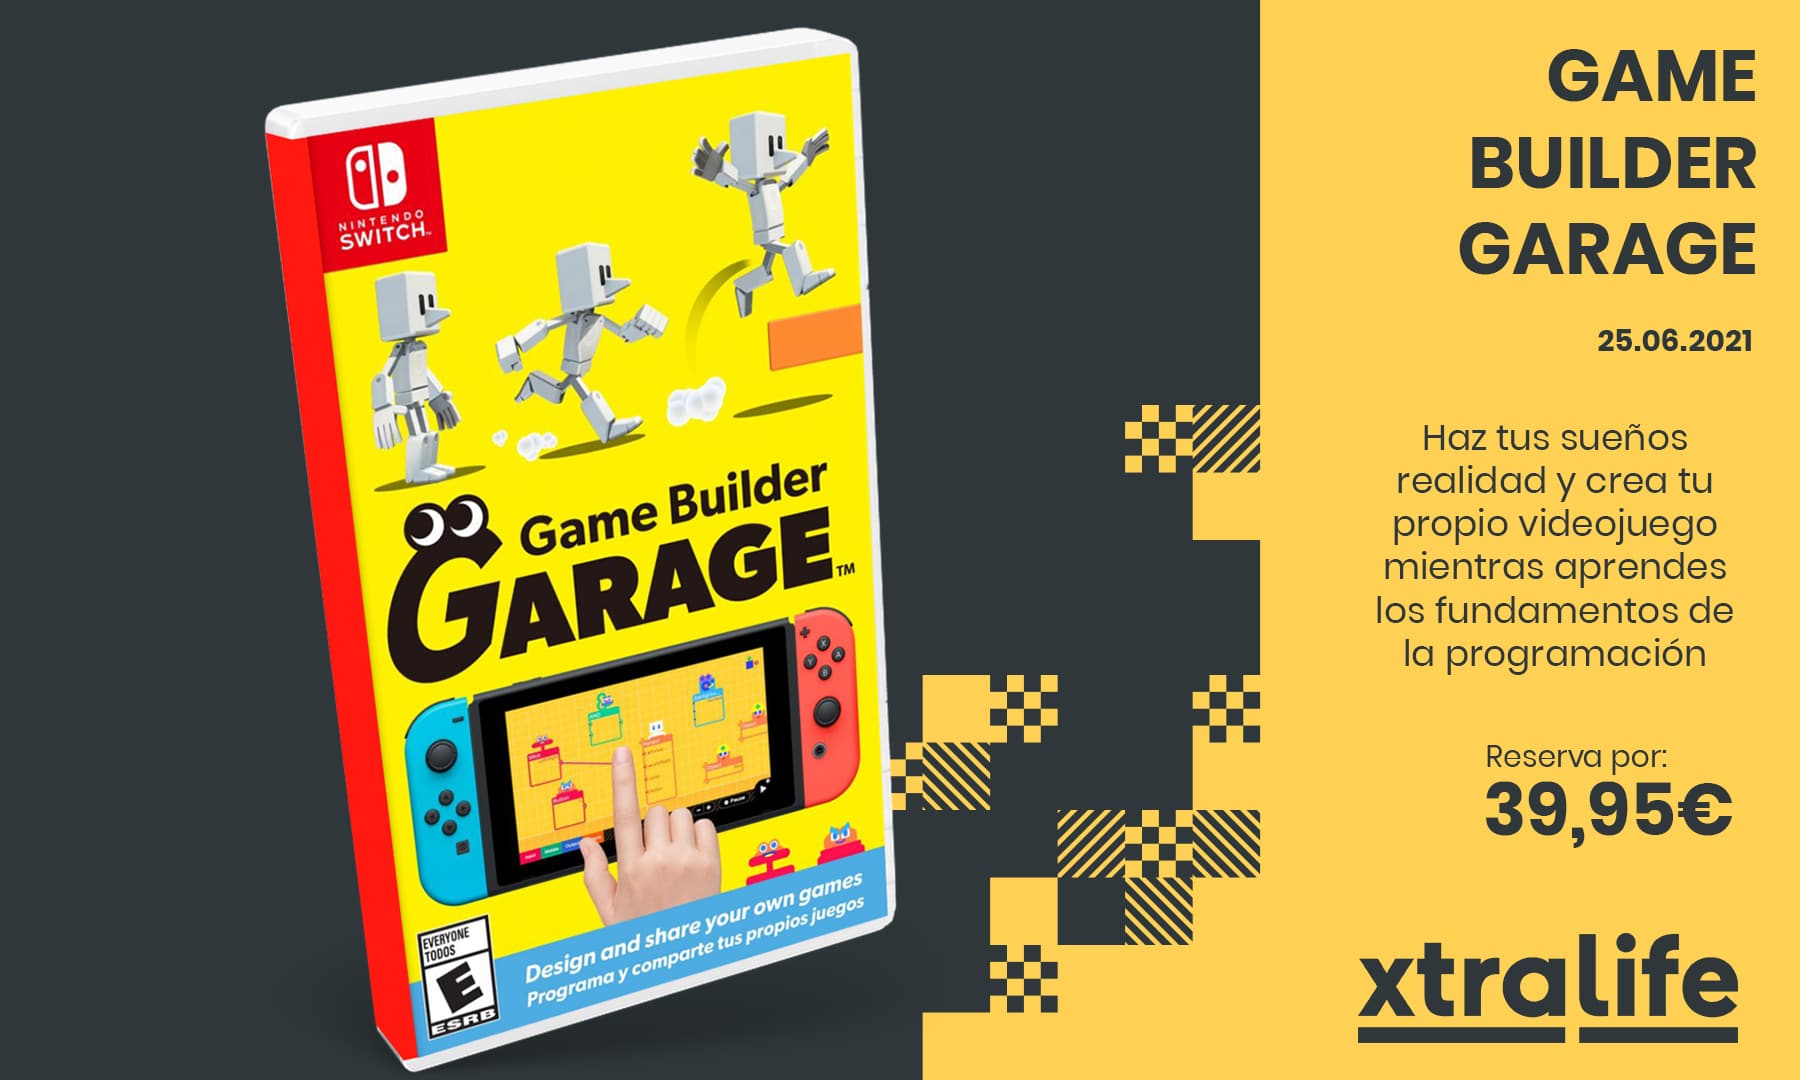 Crea tu propio videojuego con Game Builder Garage: reserva disponible